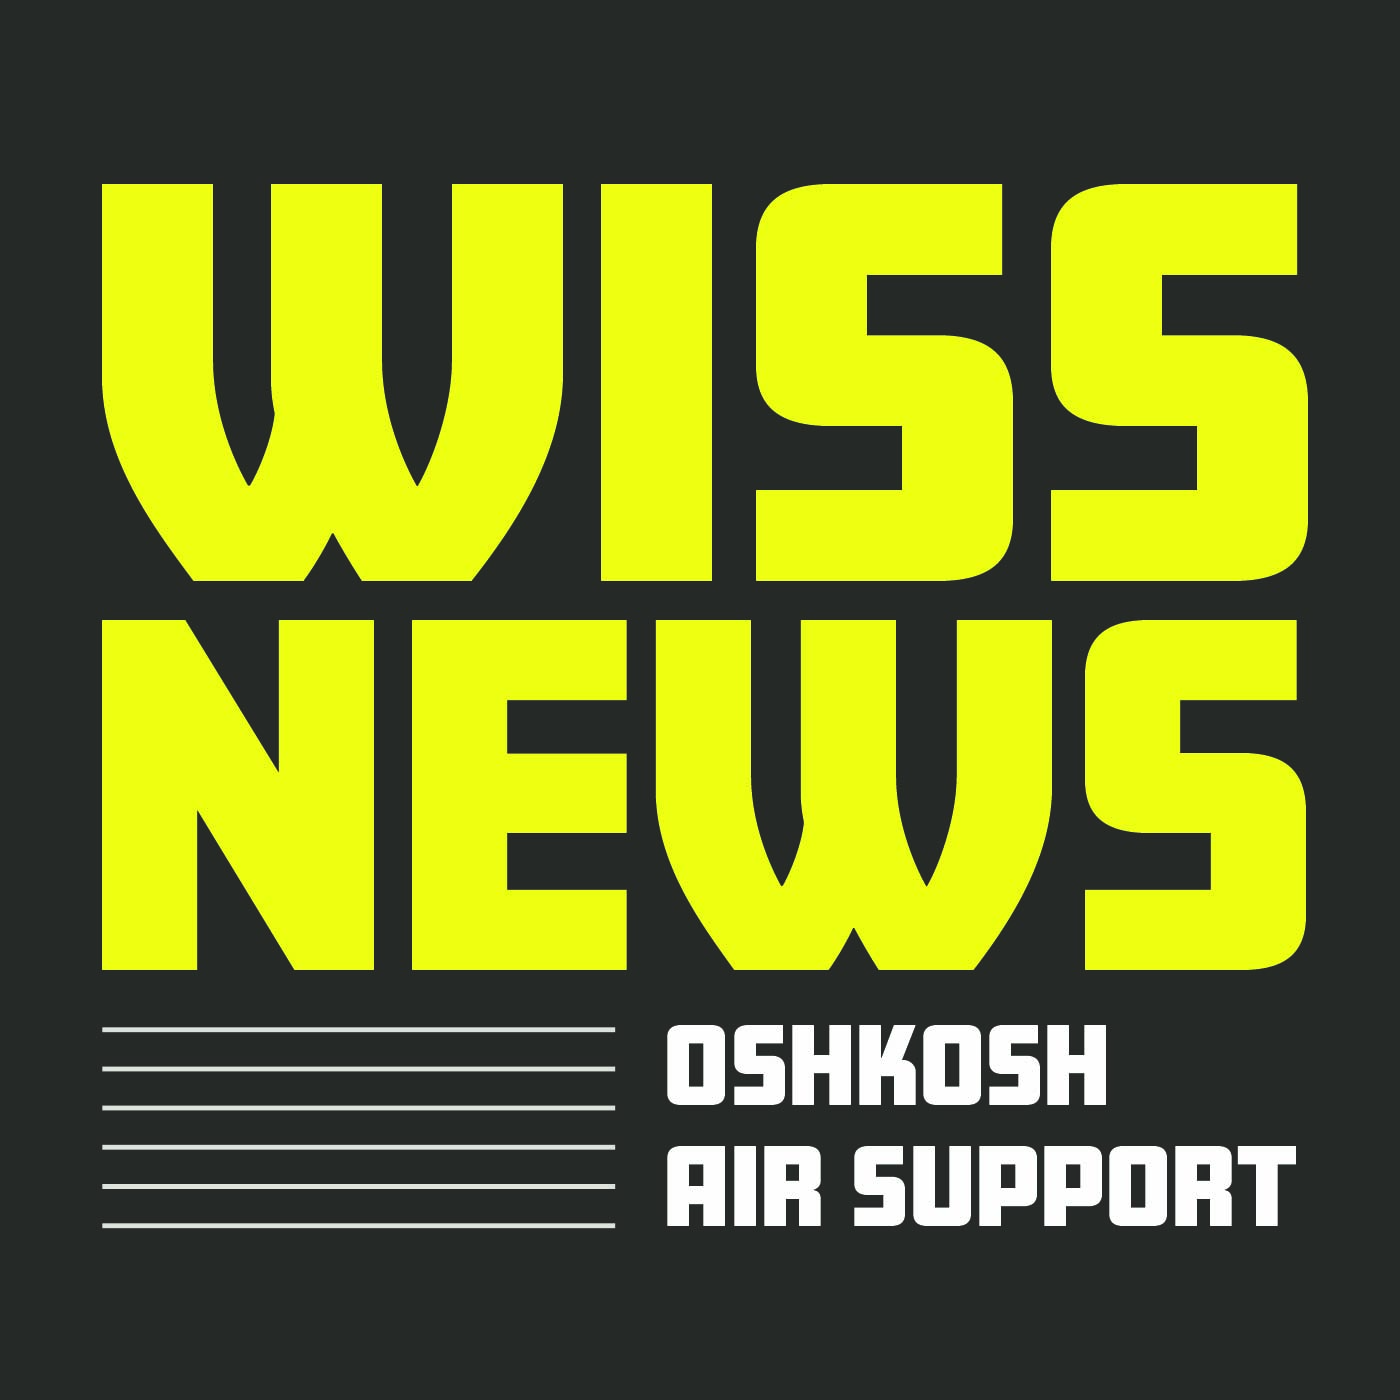 WISS News